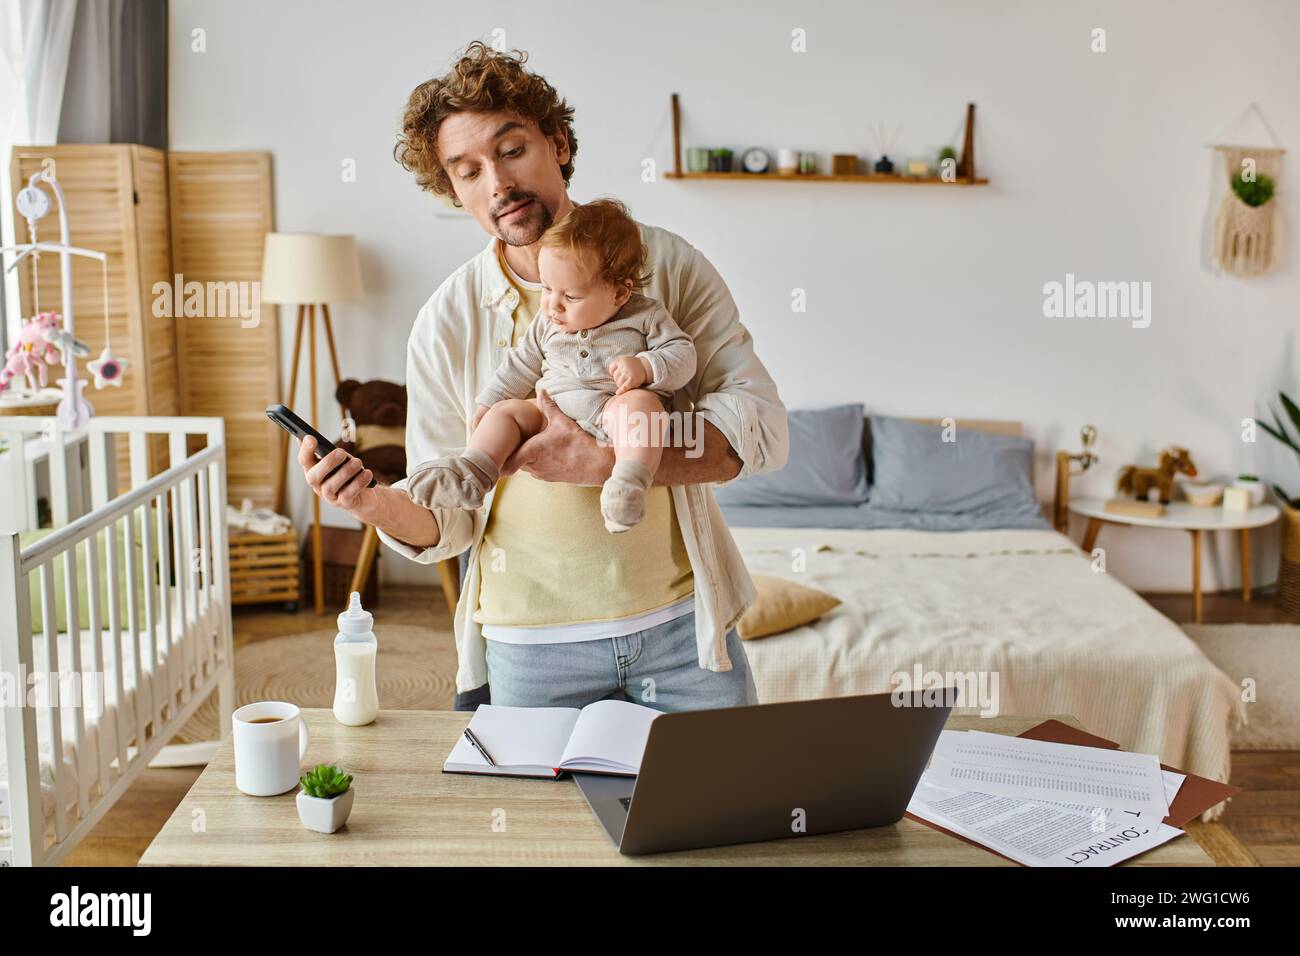 Viel beschäftigter Alleinvater hält den Kleinkind fest und benutzt das Smartphone in der Nähe des Laptops und die Babyflasche auf dem Schreibtisch Stockfoto